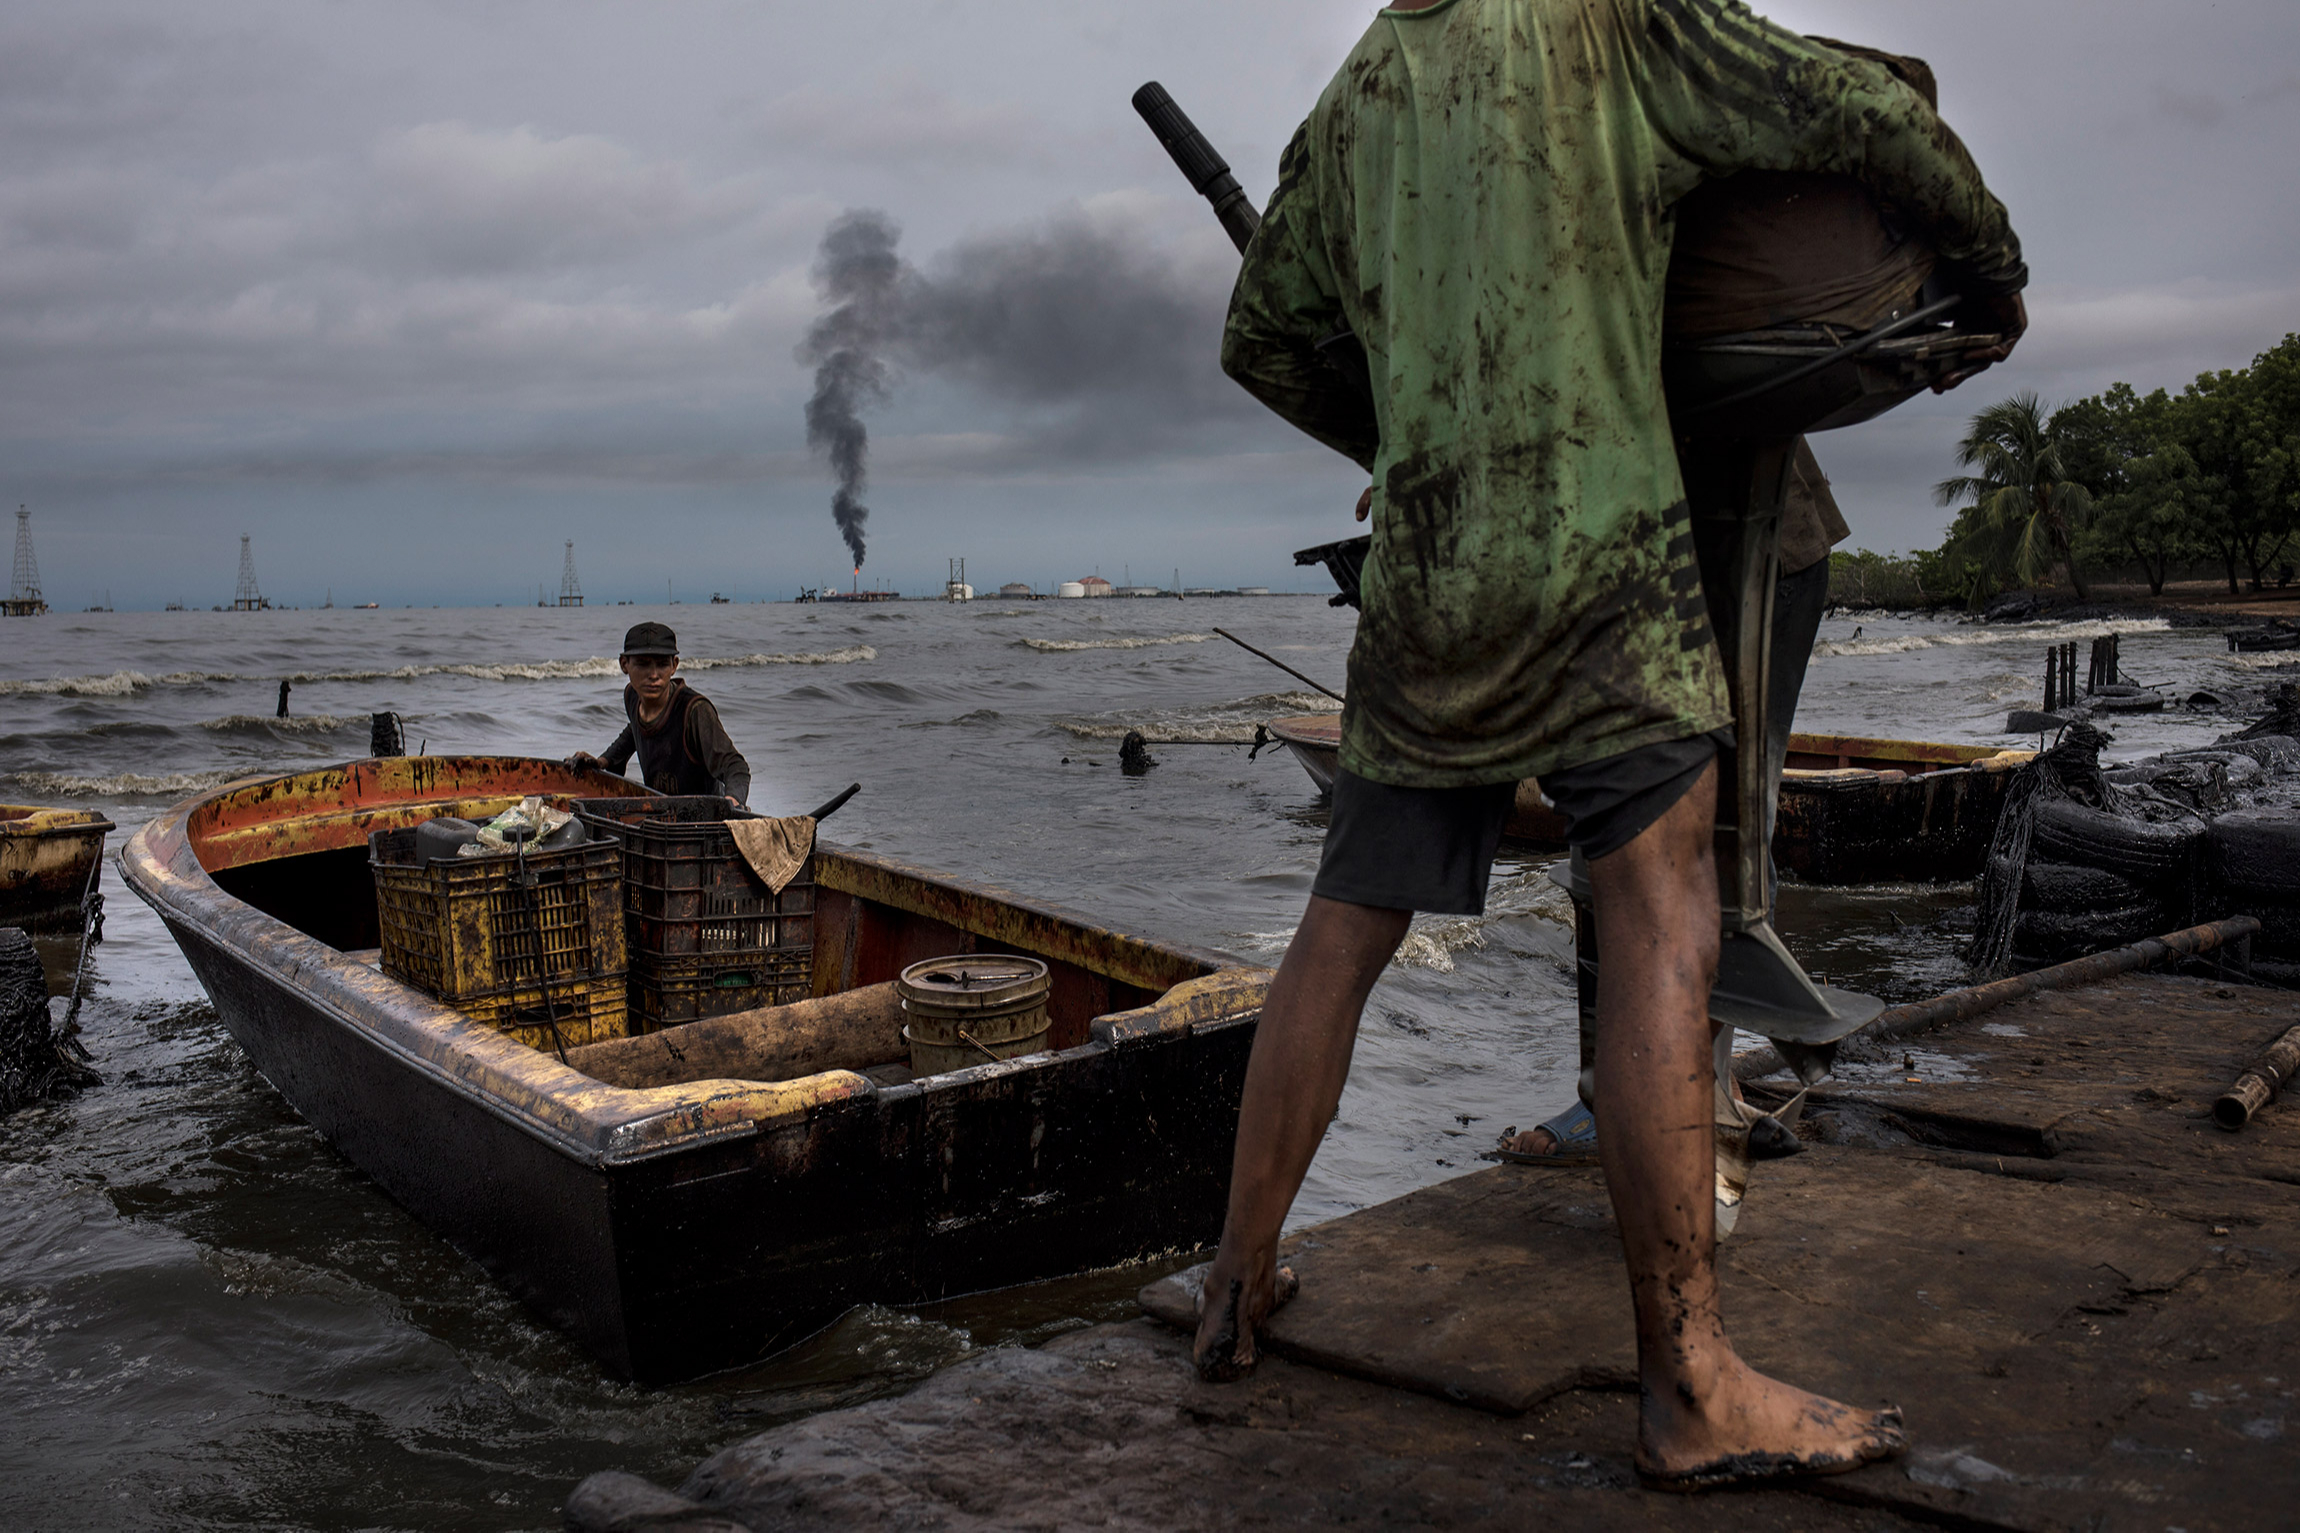 Жизнь после нефти: как живут рыбаки на загрязненном озере в Венесуэле